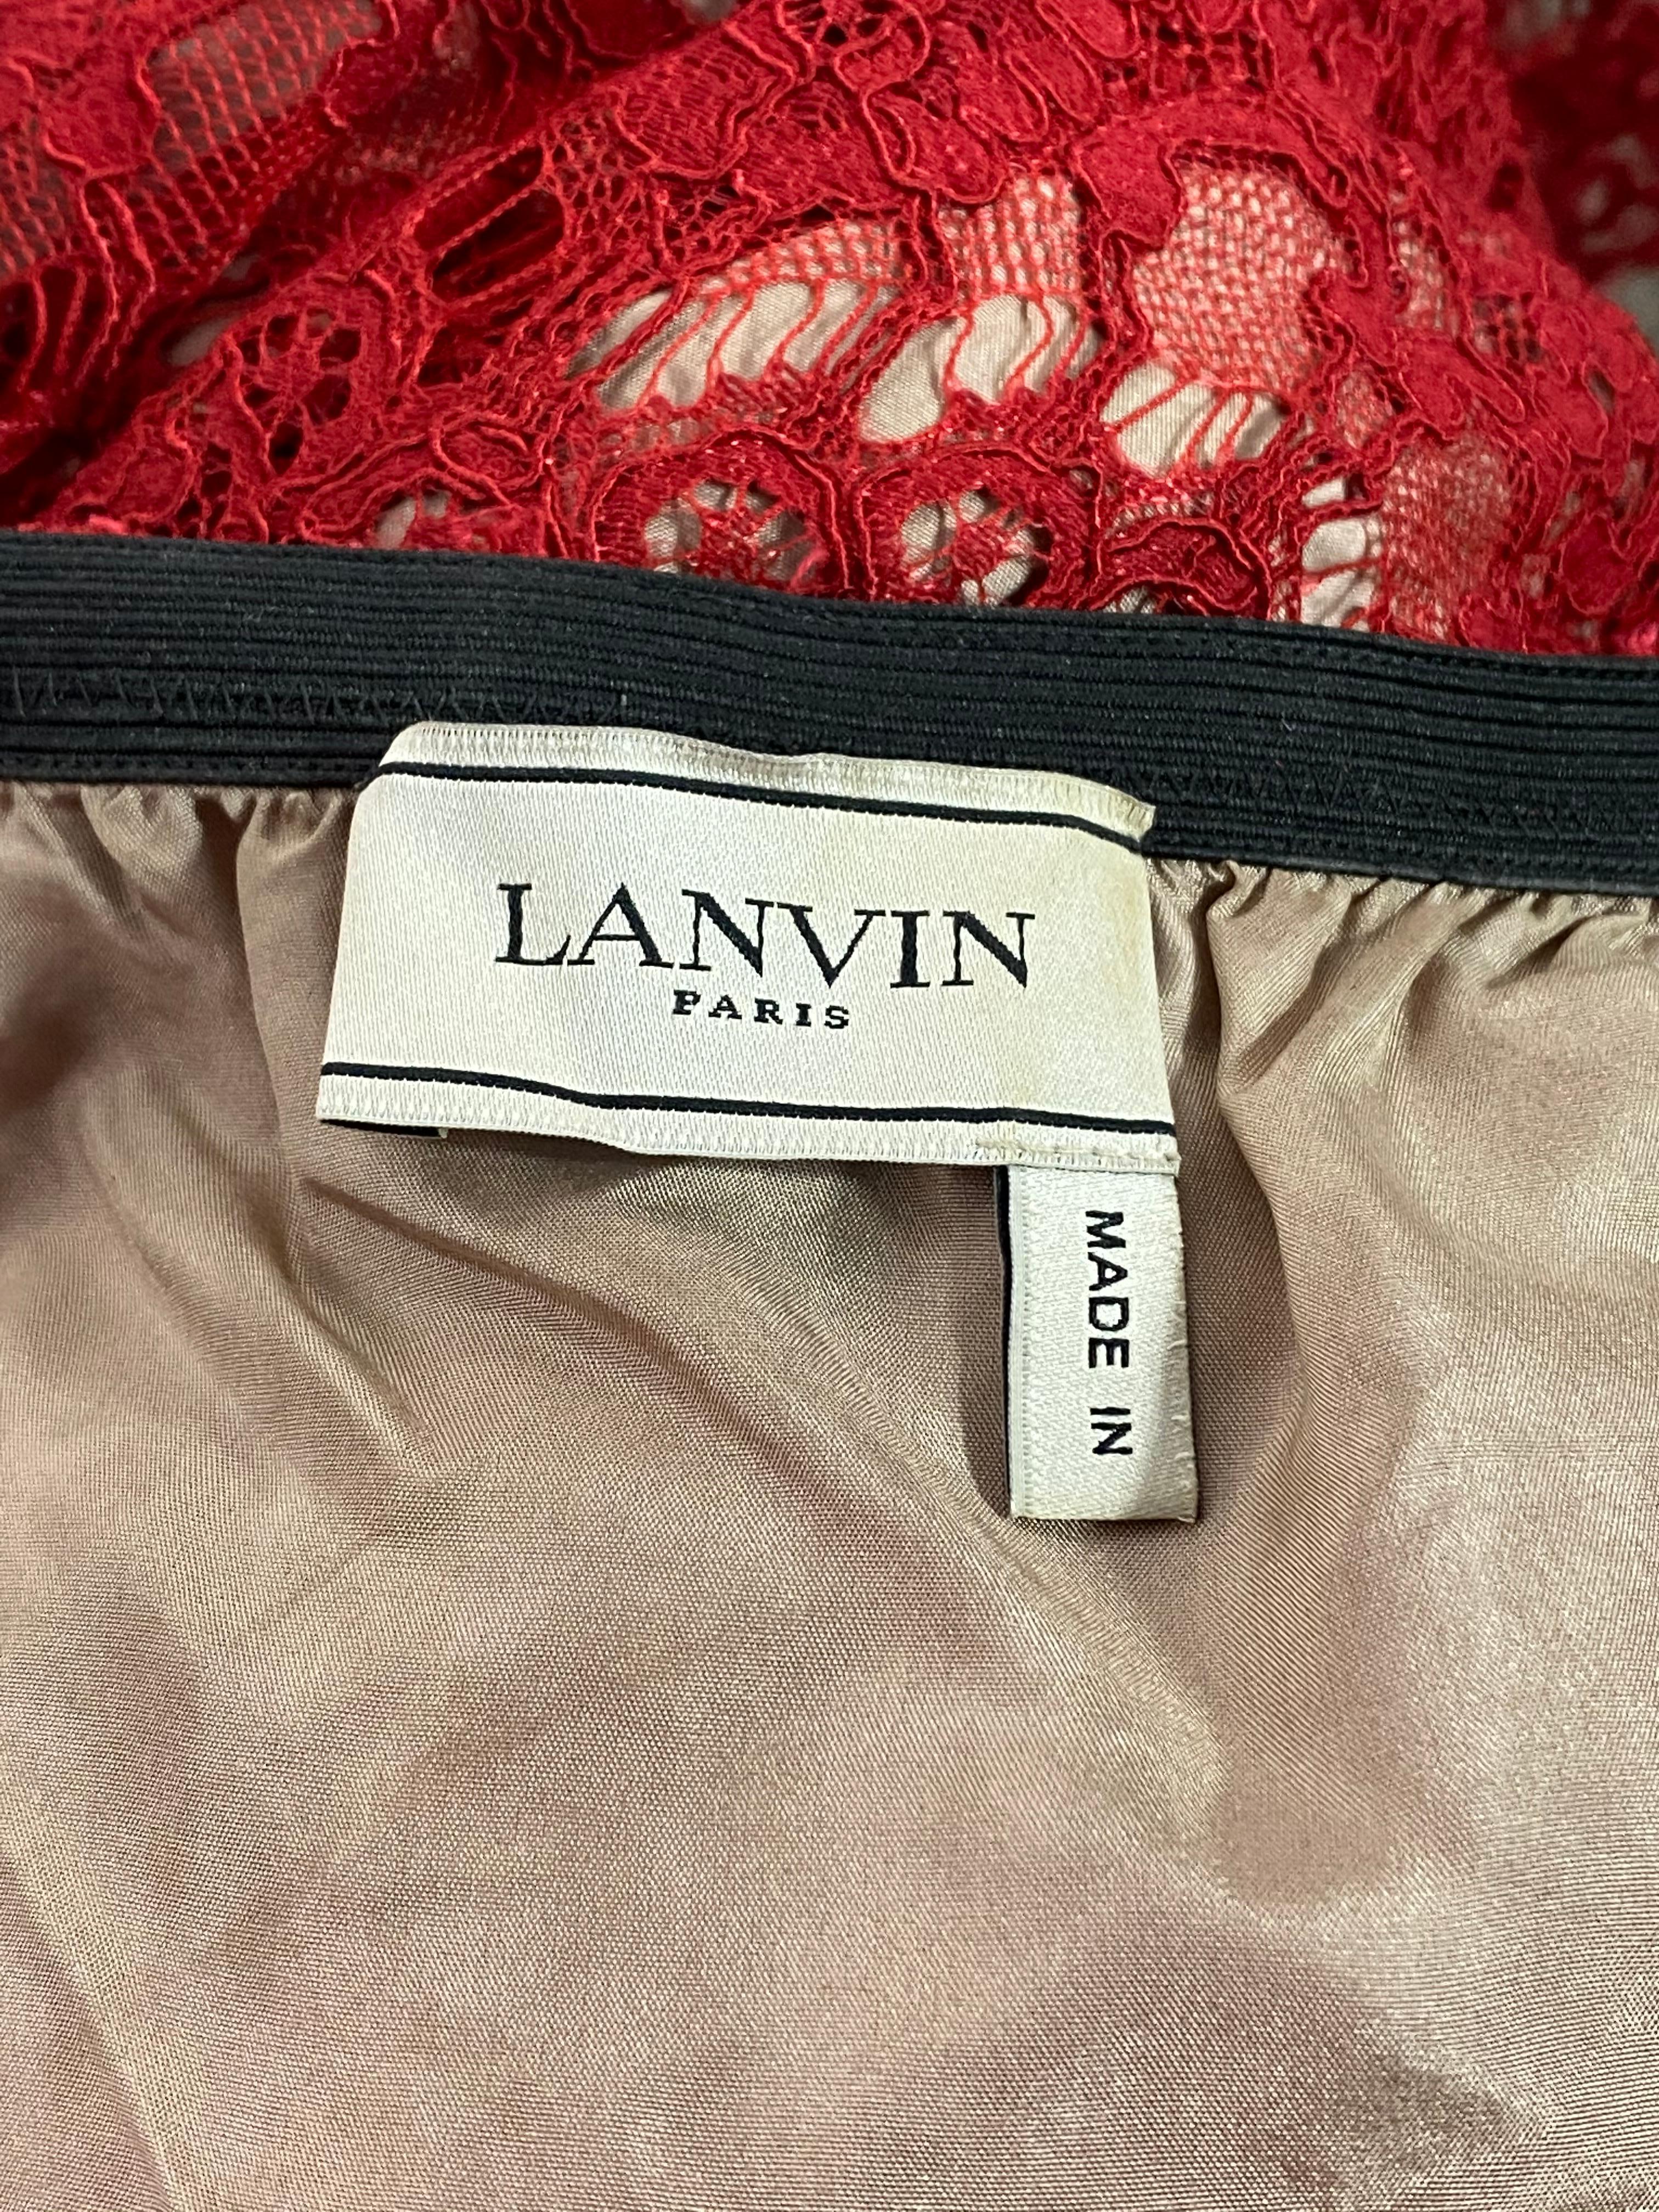 Women's Lanvin Paris Red Lace Top, Size 38 For Sale